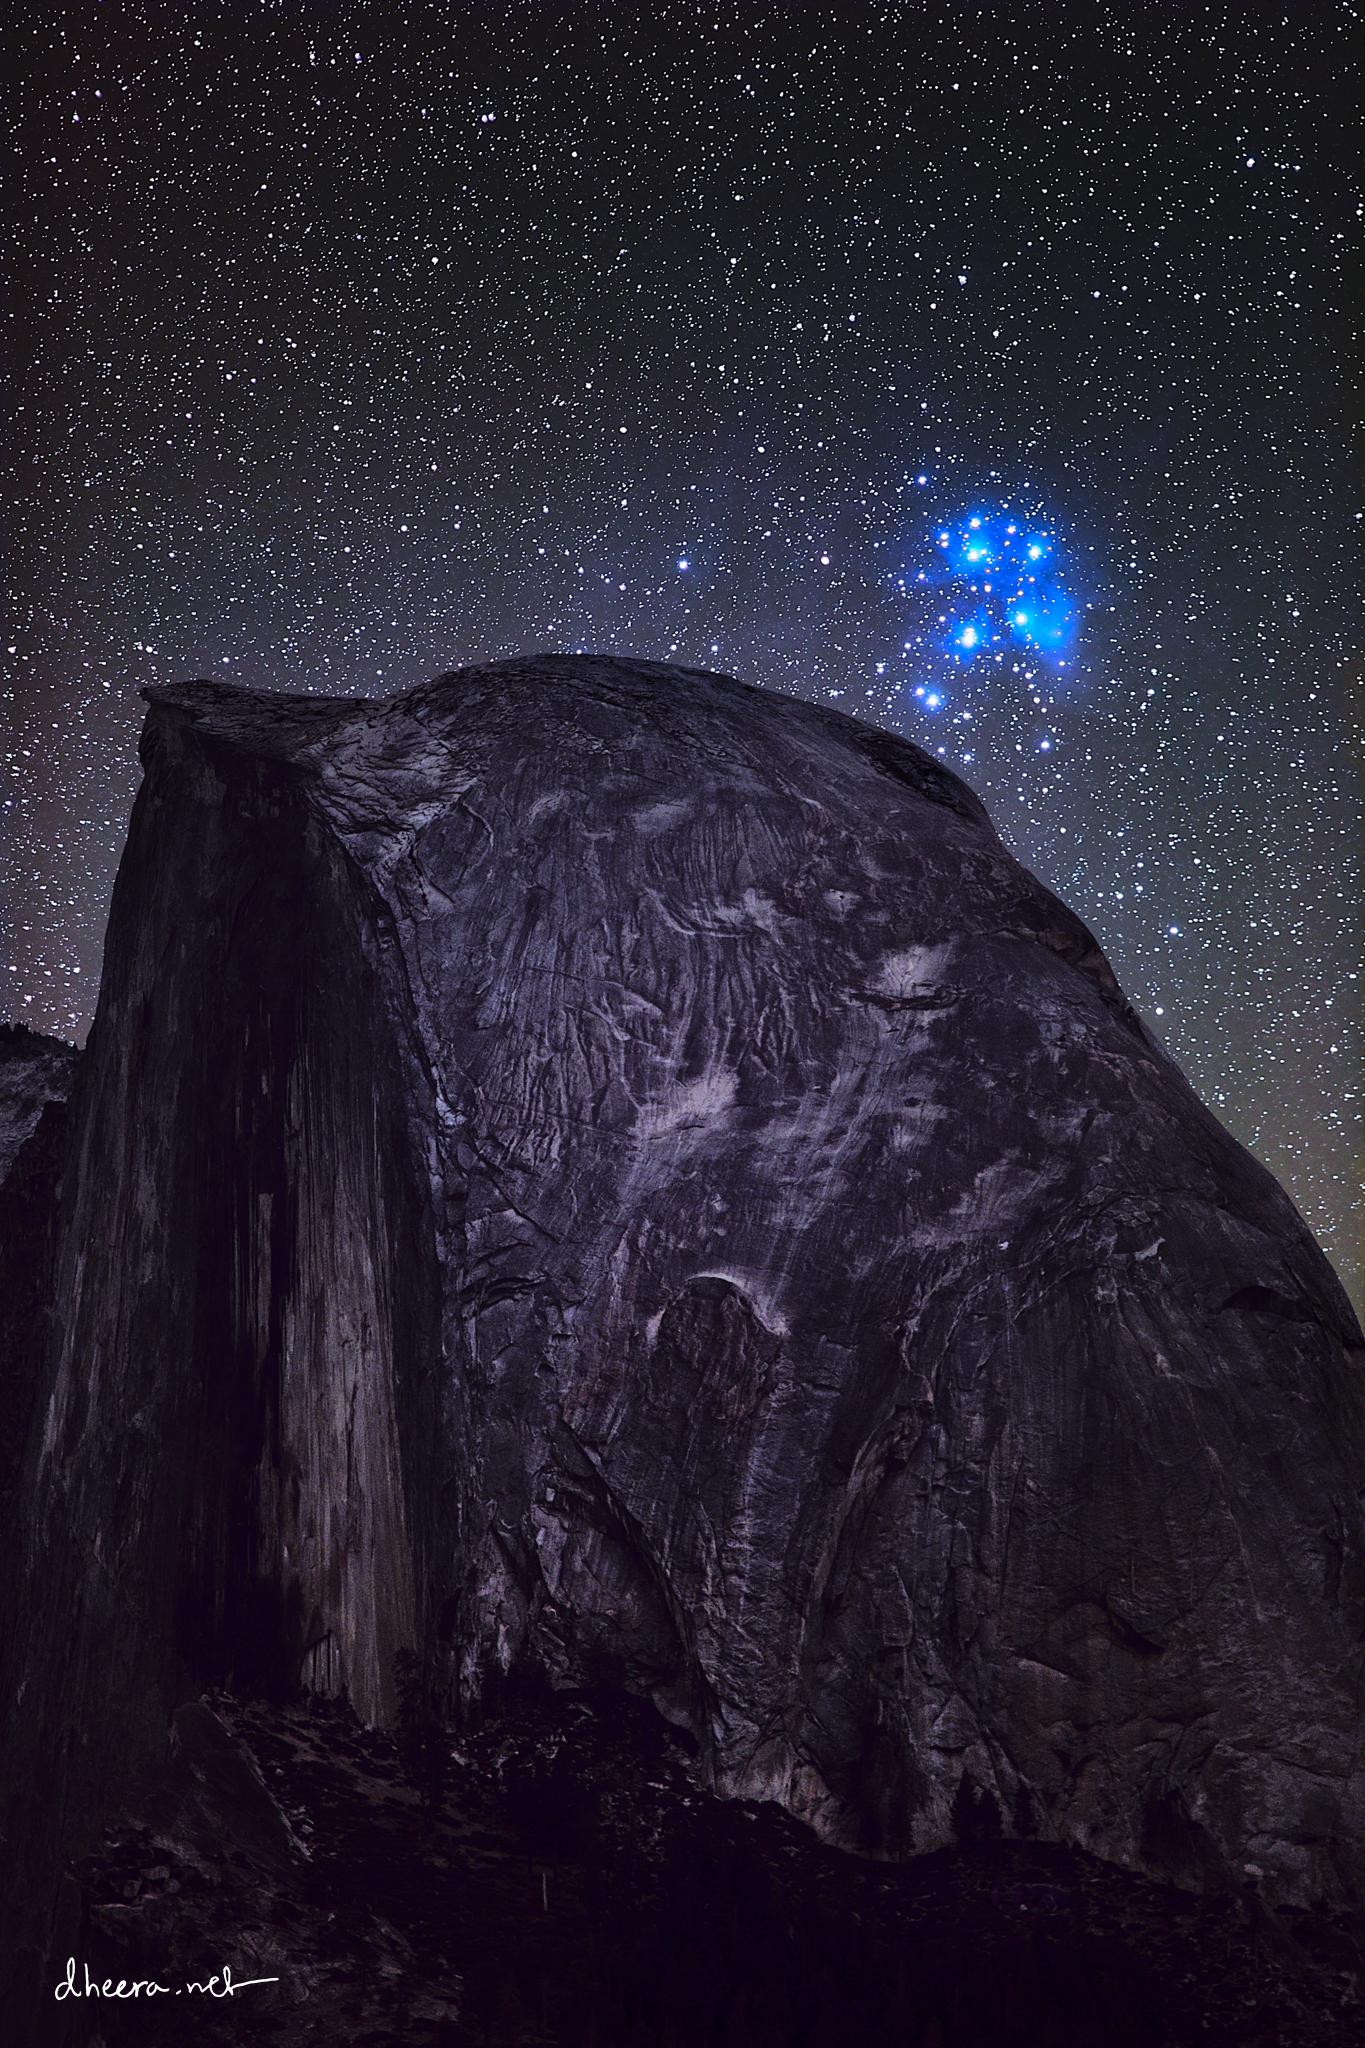 مرتفع صخري وخلفه السماء التي تتناثر فيها النجوم ويزيّنها فوقه تماماً عنقود الثريّا النجمي بنجومه الزرقاء